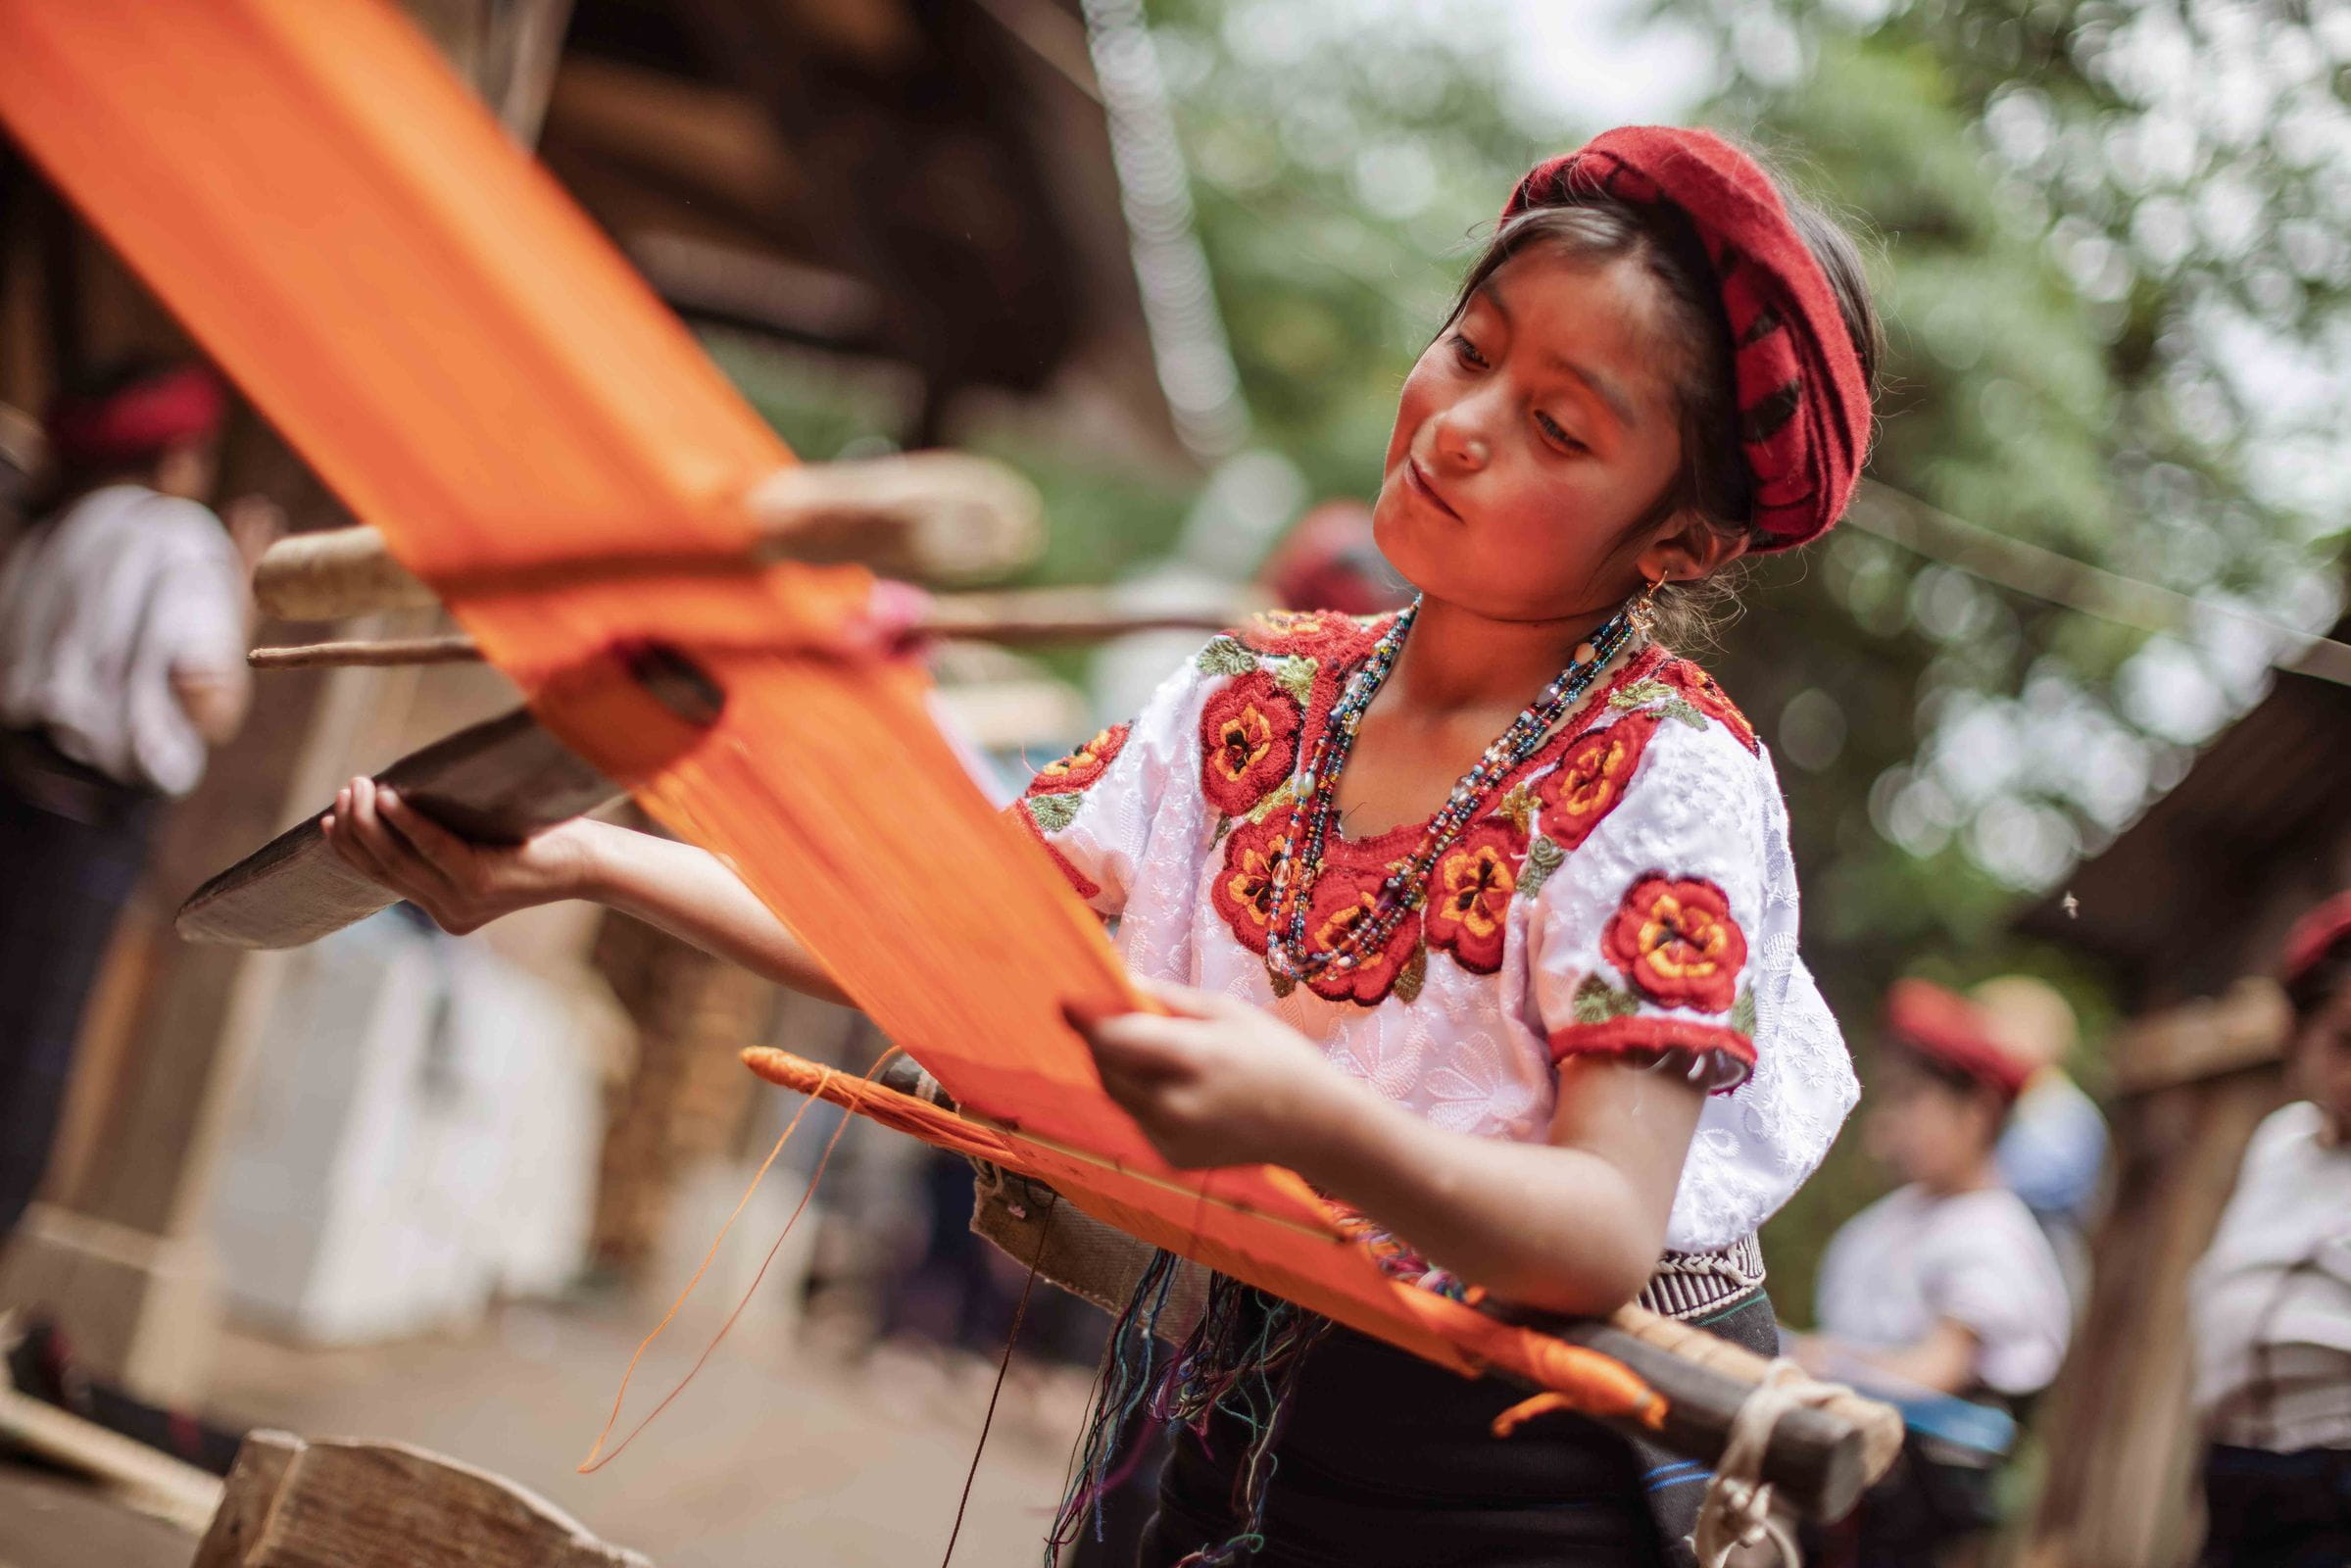 Ein Mädchen in traditioneller Kleidung webt mit orangefarbenem Garn unter freiem Himmel.  (Quelle: Jakob Studnar)